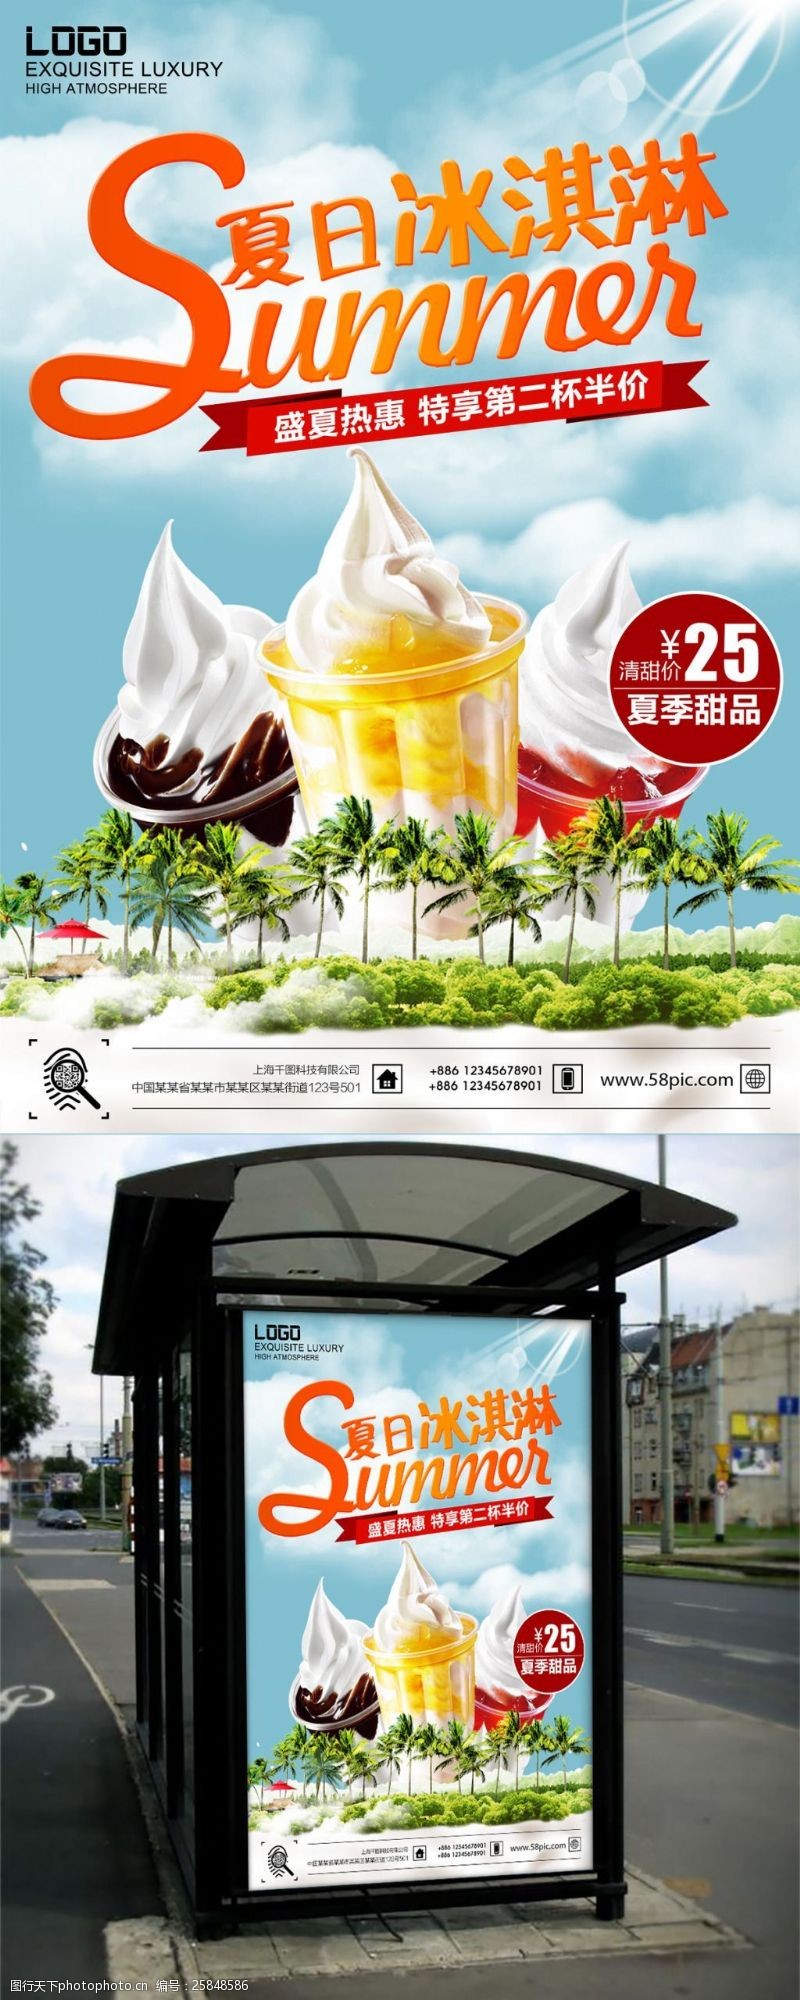 冰激凌模板下载清新风格夏季美食冰淇淋促销海报